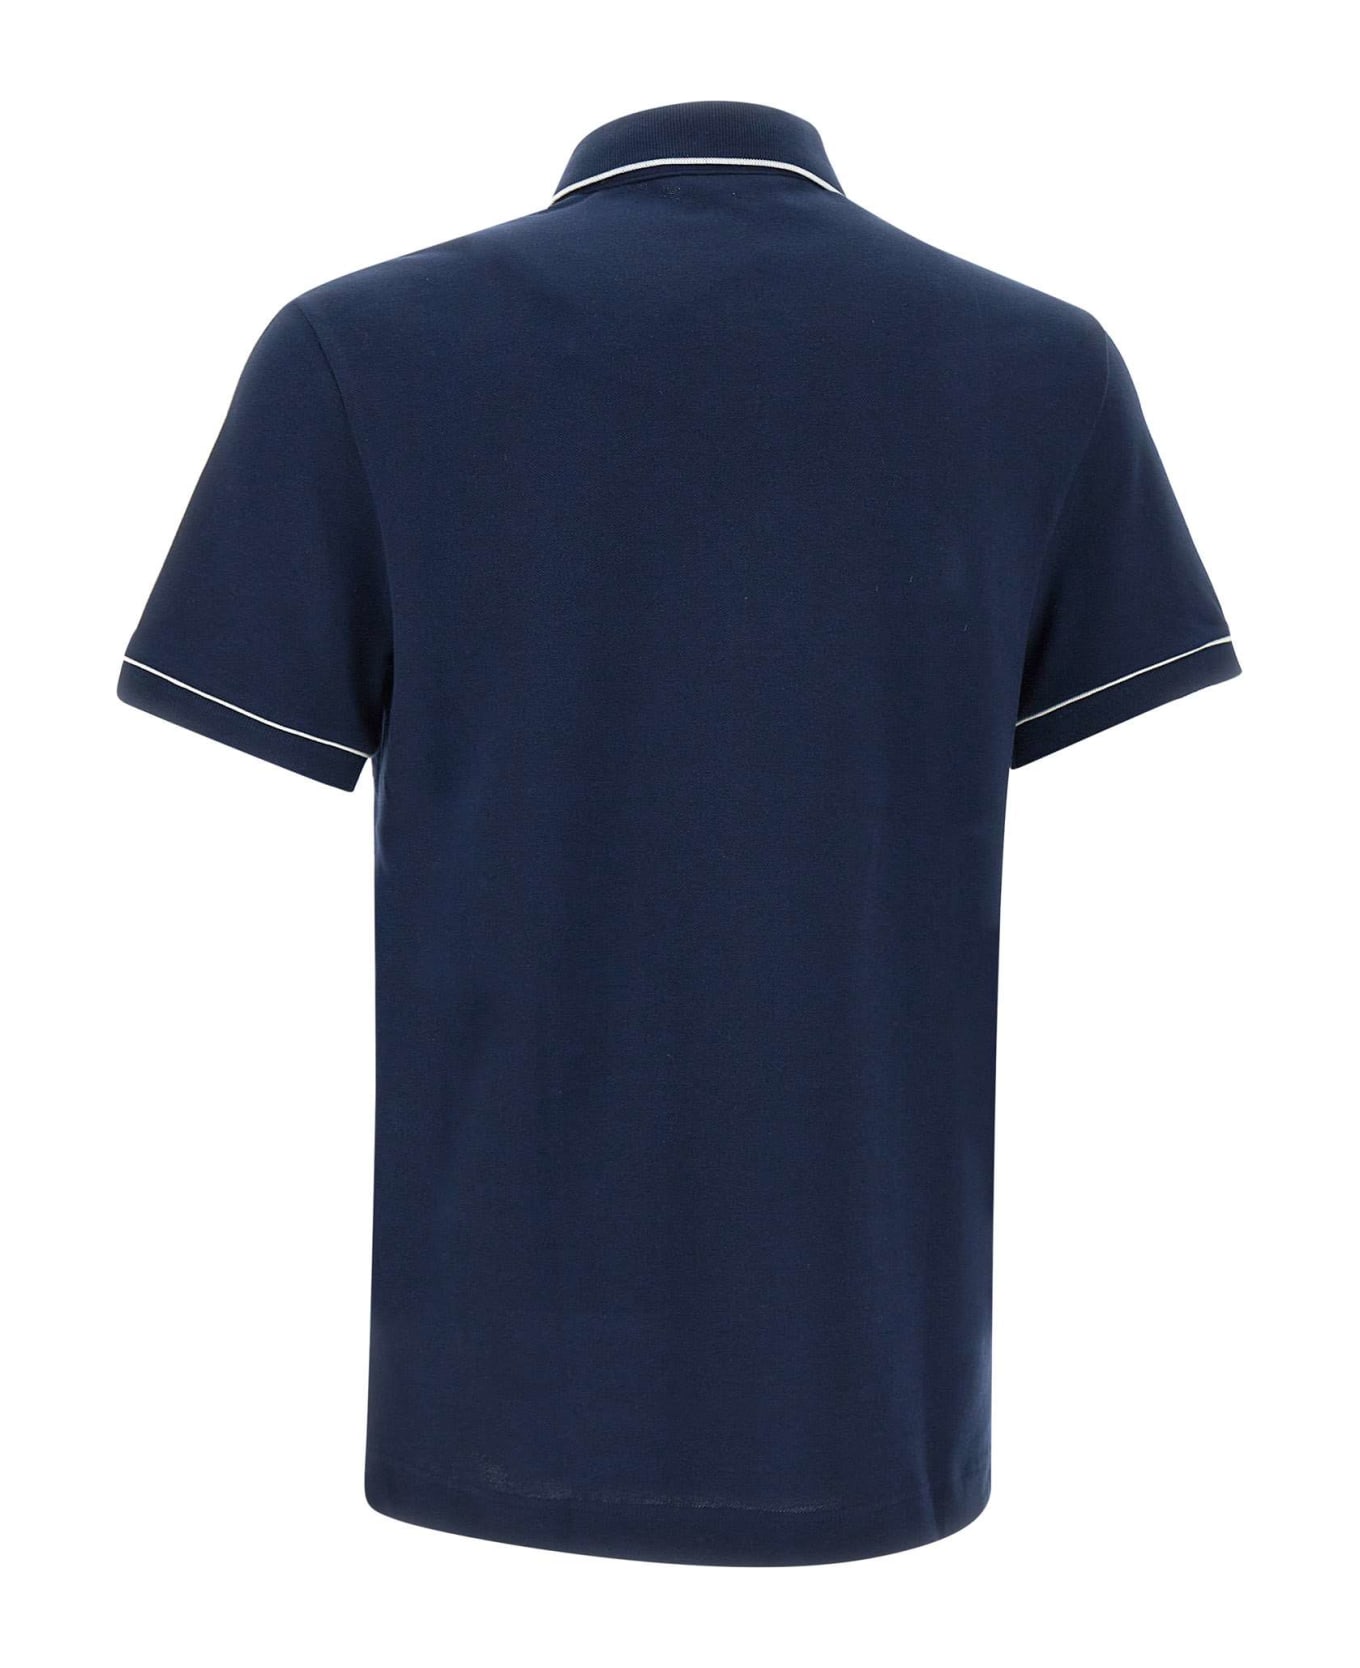 Lacoste Cotton Piquet Polo Shirt - BLUE ポロシャツ